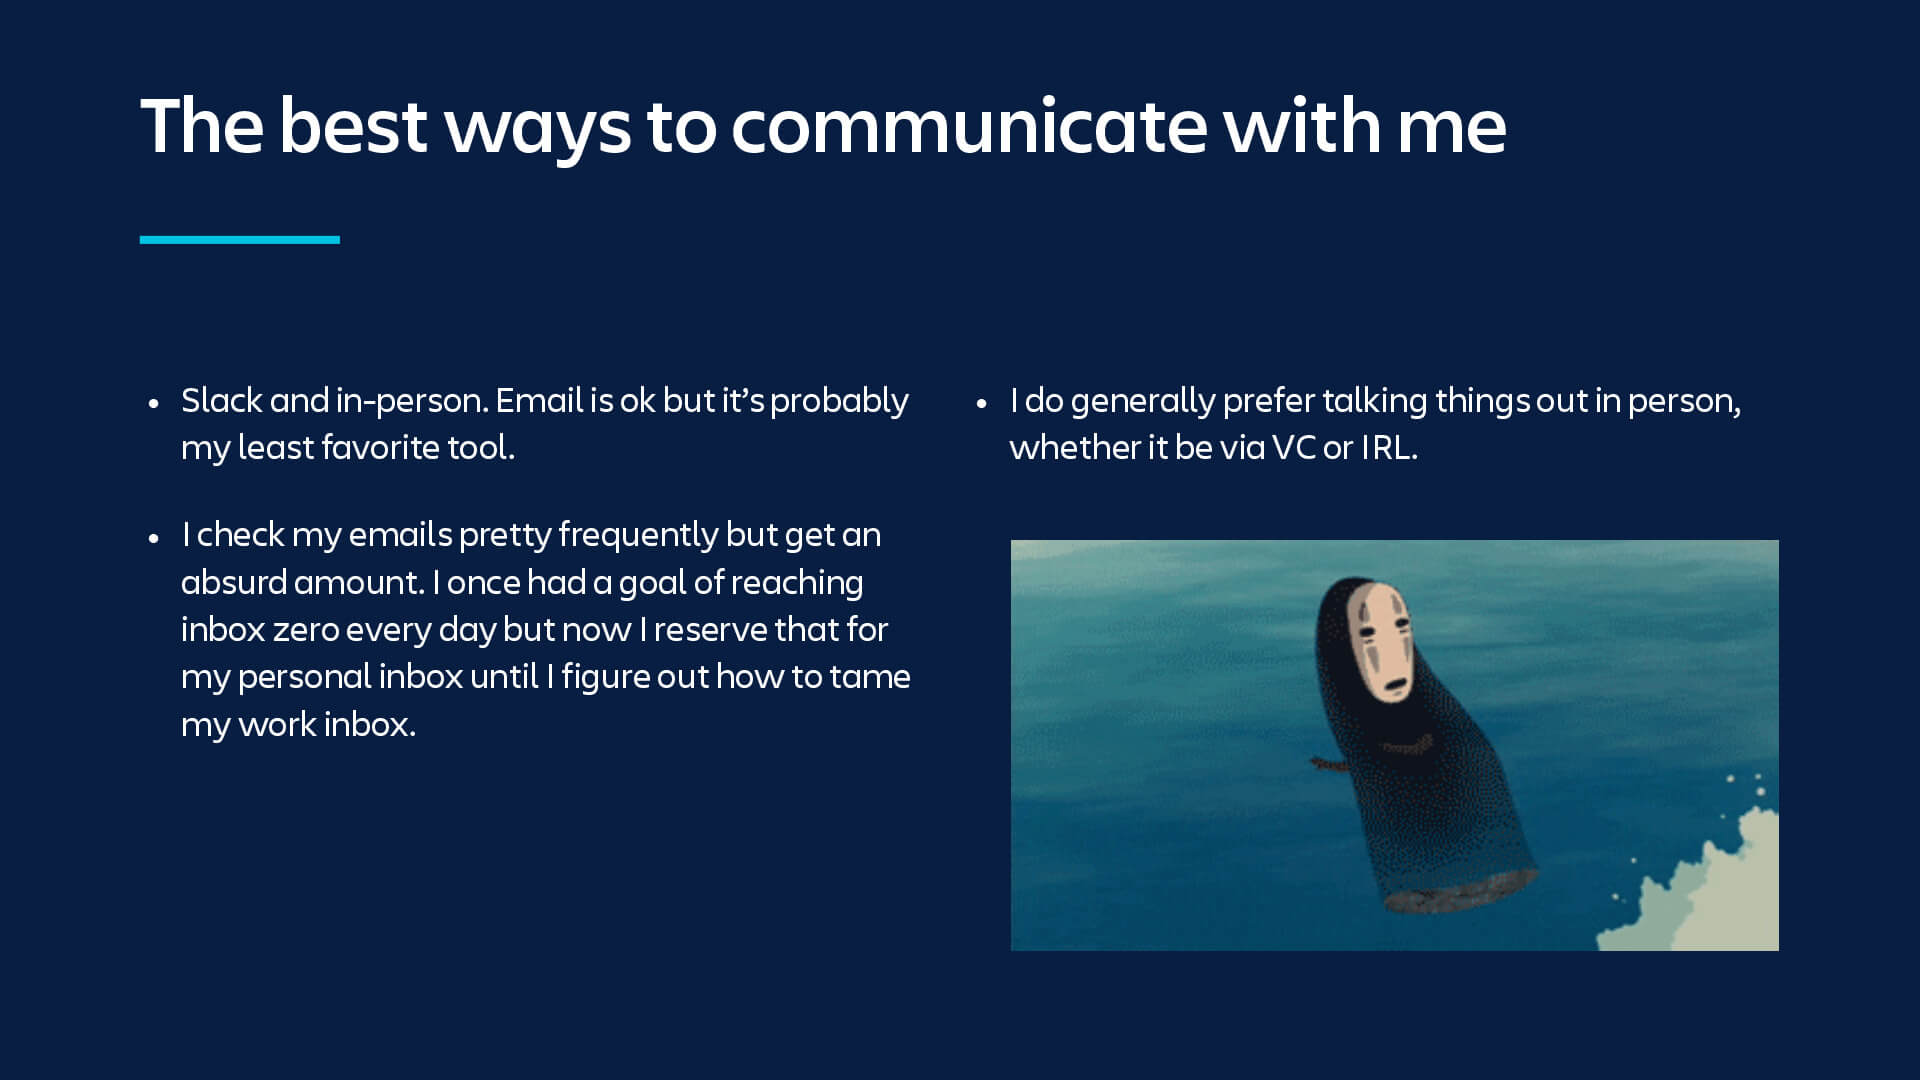 Uitleg over hoe het best te communiceren